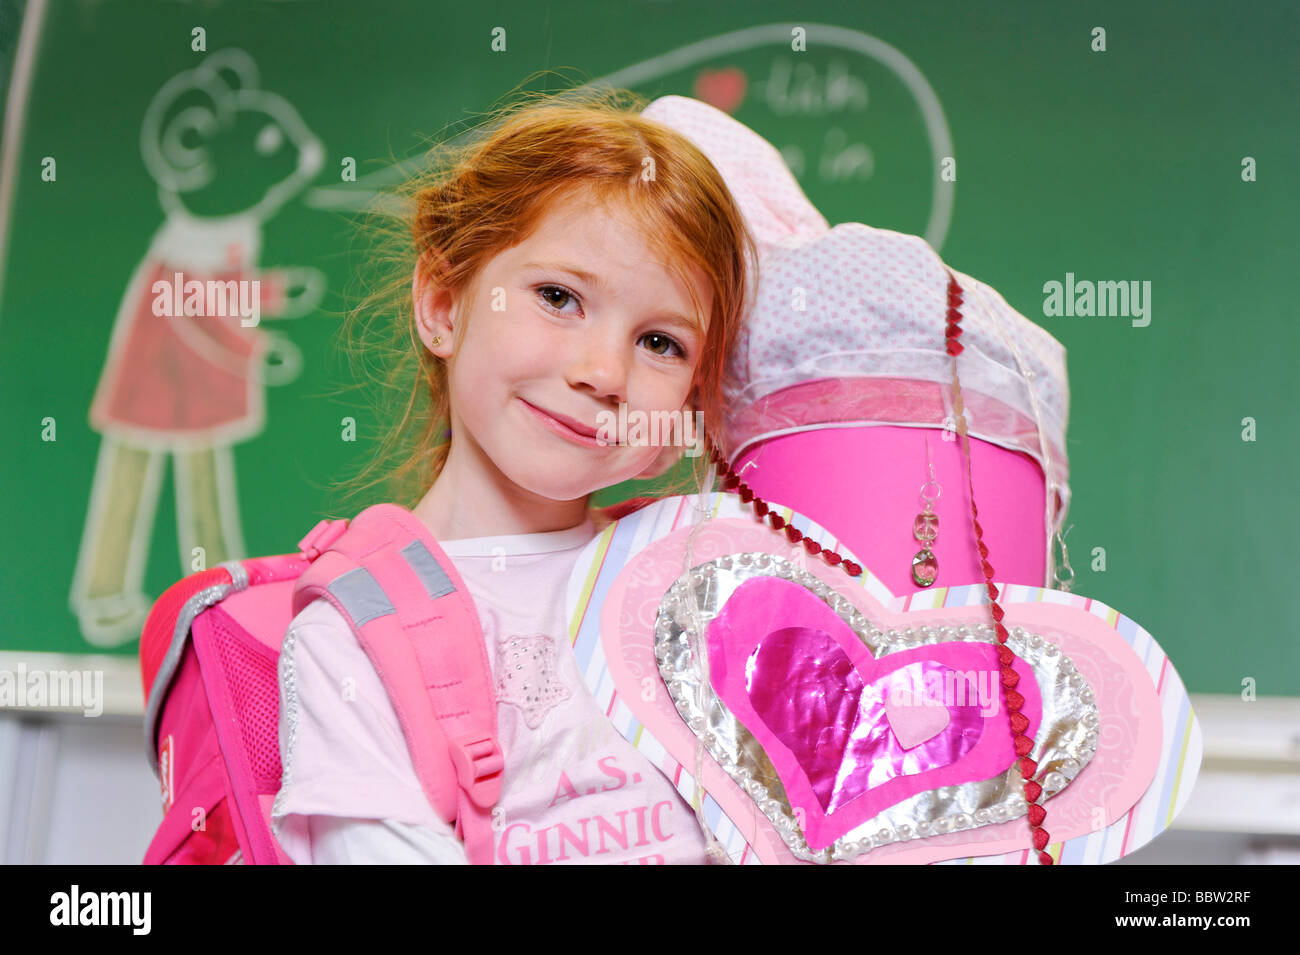 Jeune fille à sa première journée à l'école tenant une schultuete, cône école rempli de bonbons et de cadeaux Banque D'Images